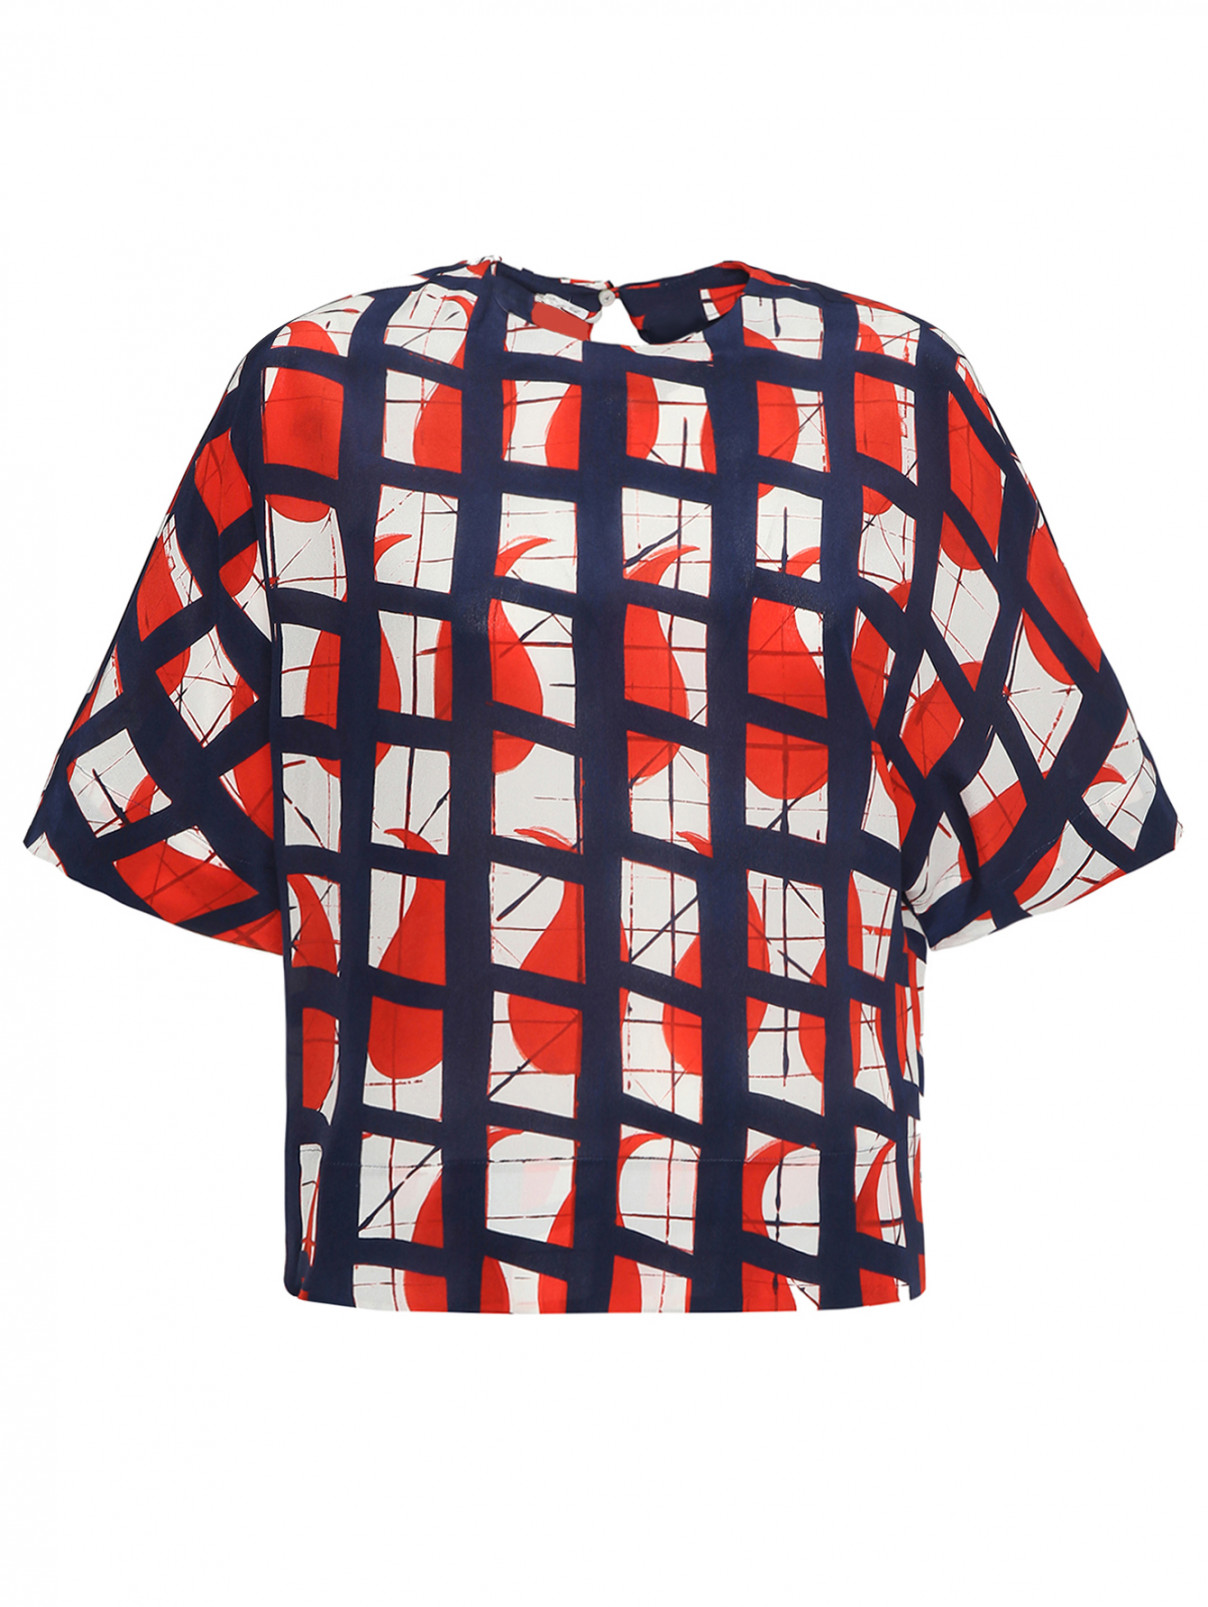 Шелковая блуза с принтом геометрия Barba Napoli  –  Общий вид